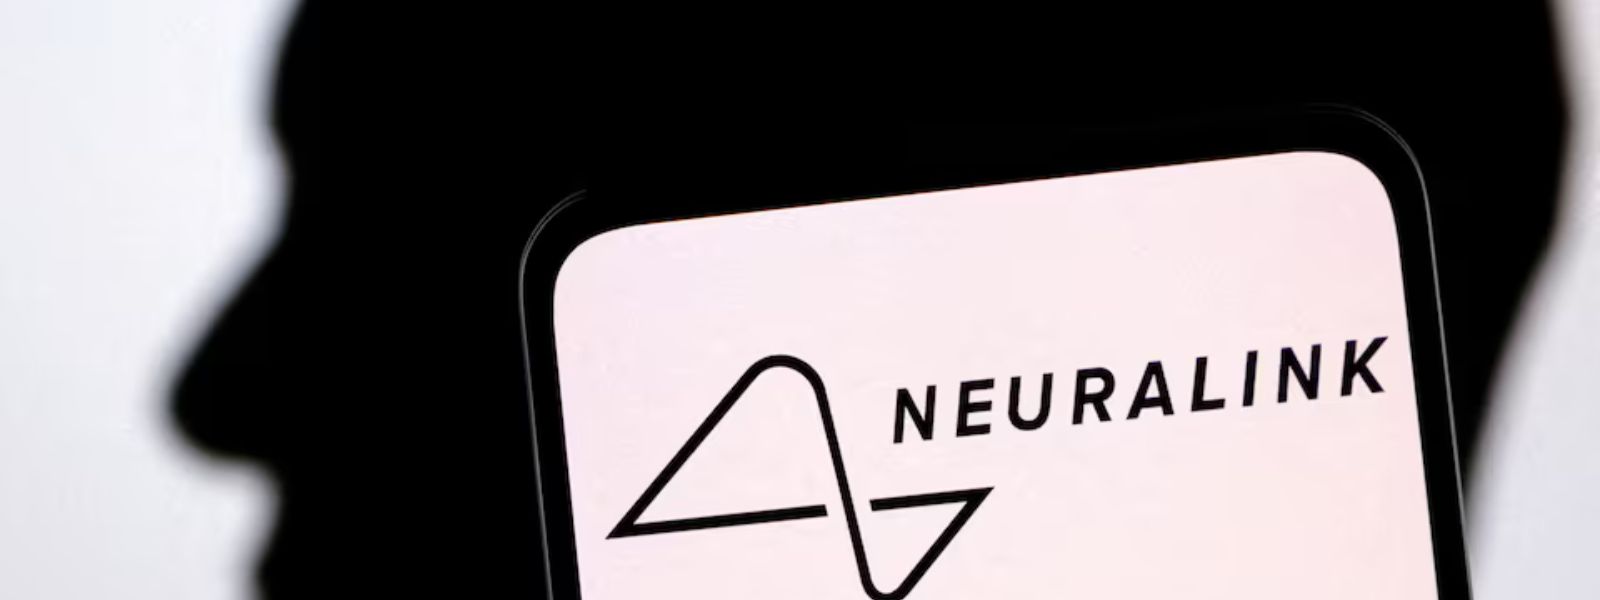 Musk's Neuralink shows first brain-chip patient